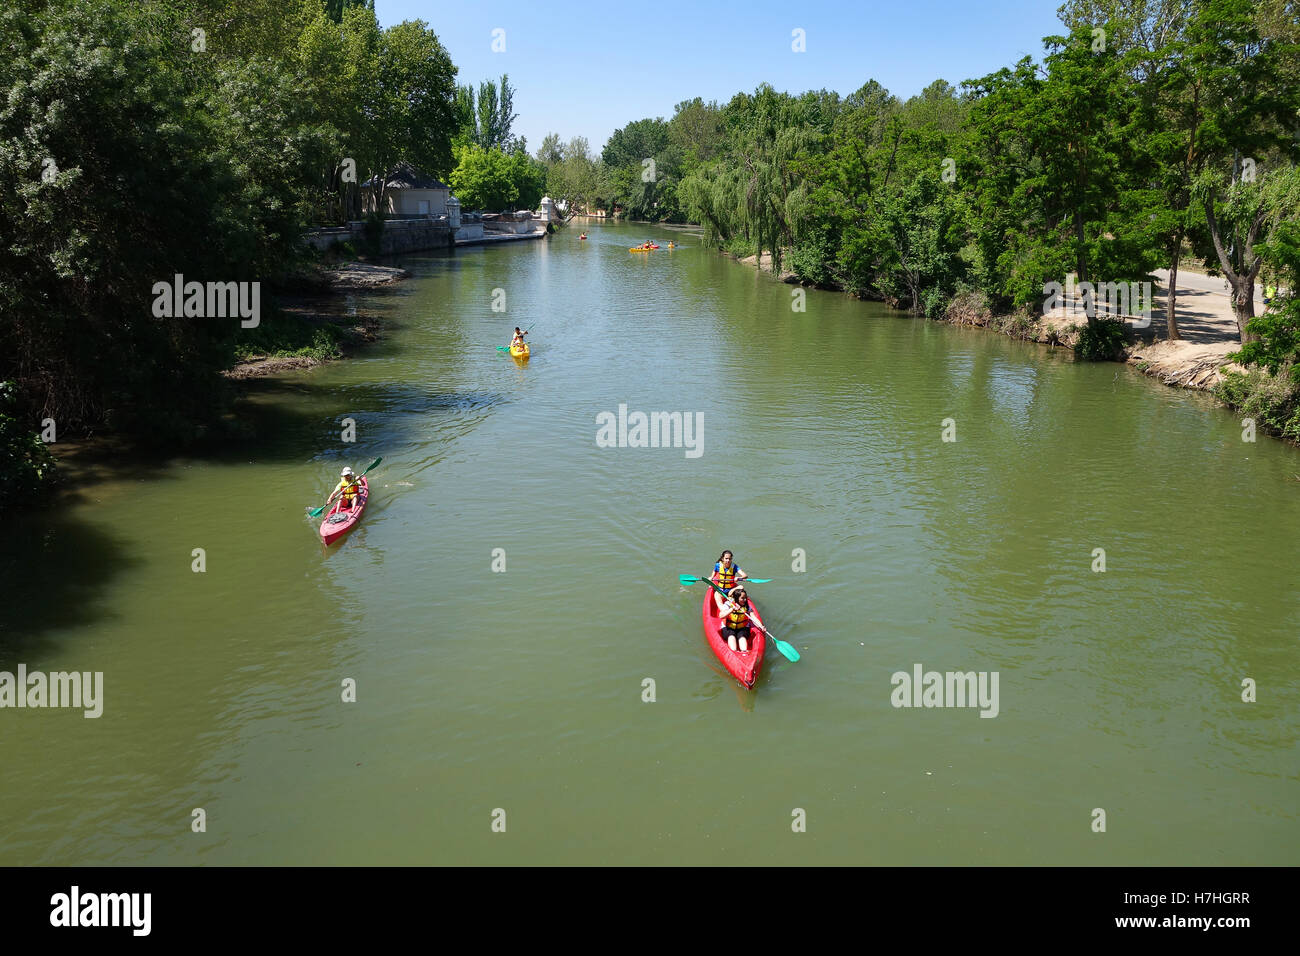 Les kayakistes sur la rivière Tajo dans le jardin de l'hôtel Aranjuez Espagne Banque D'Images